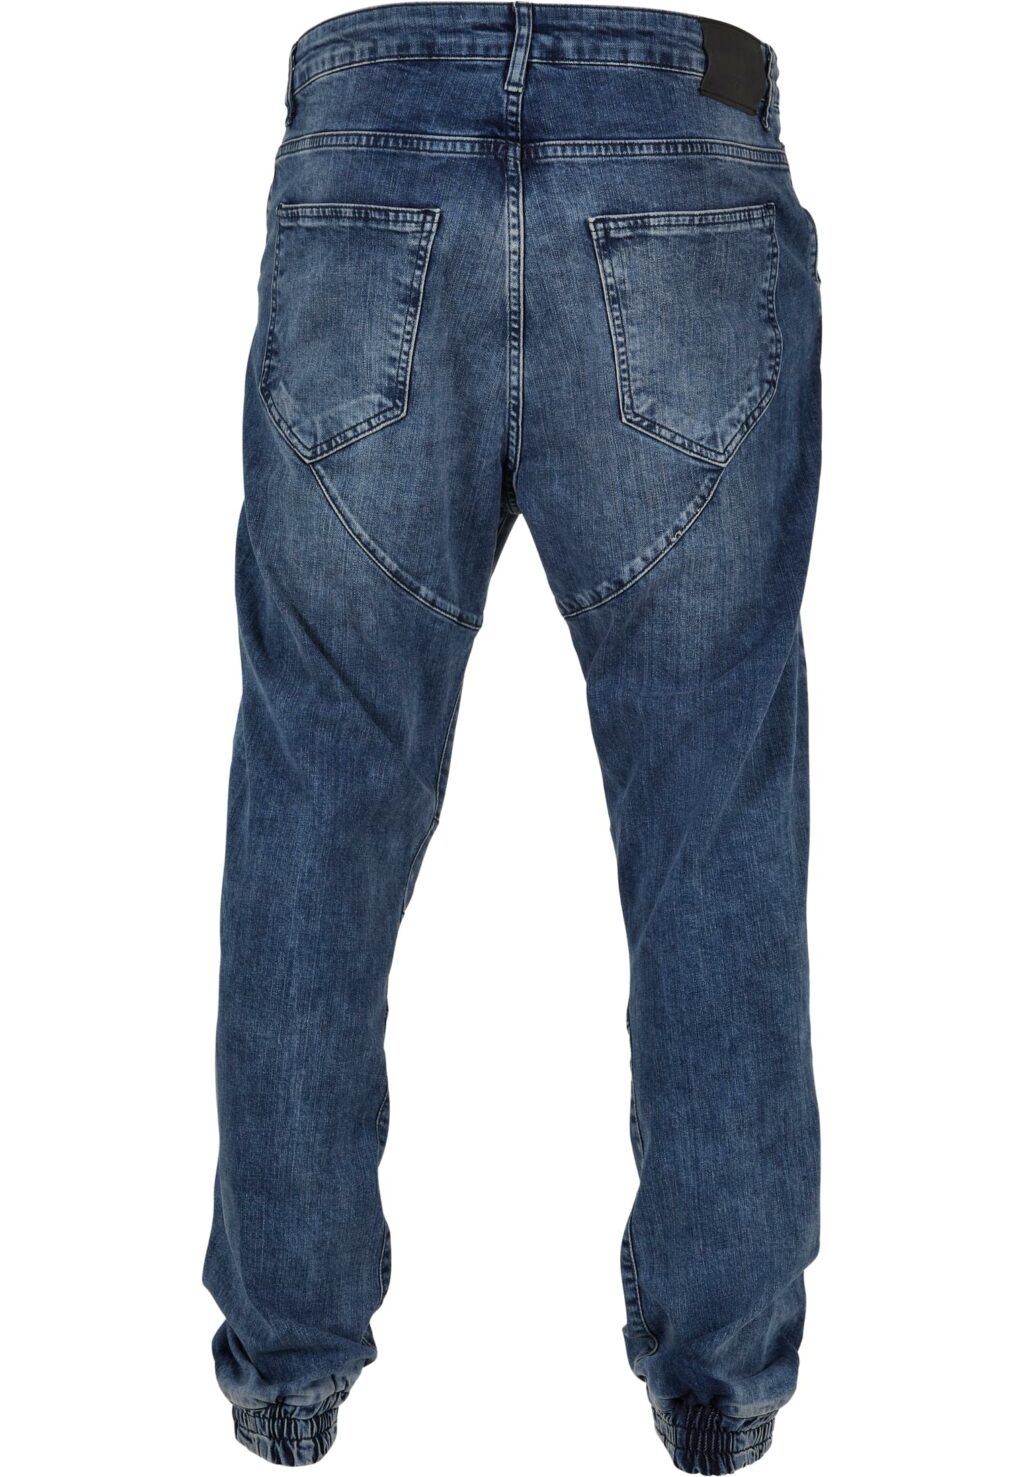 Straight Fit Jeans denimblue JRJSYGZ11